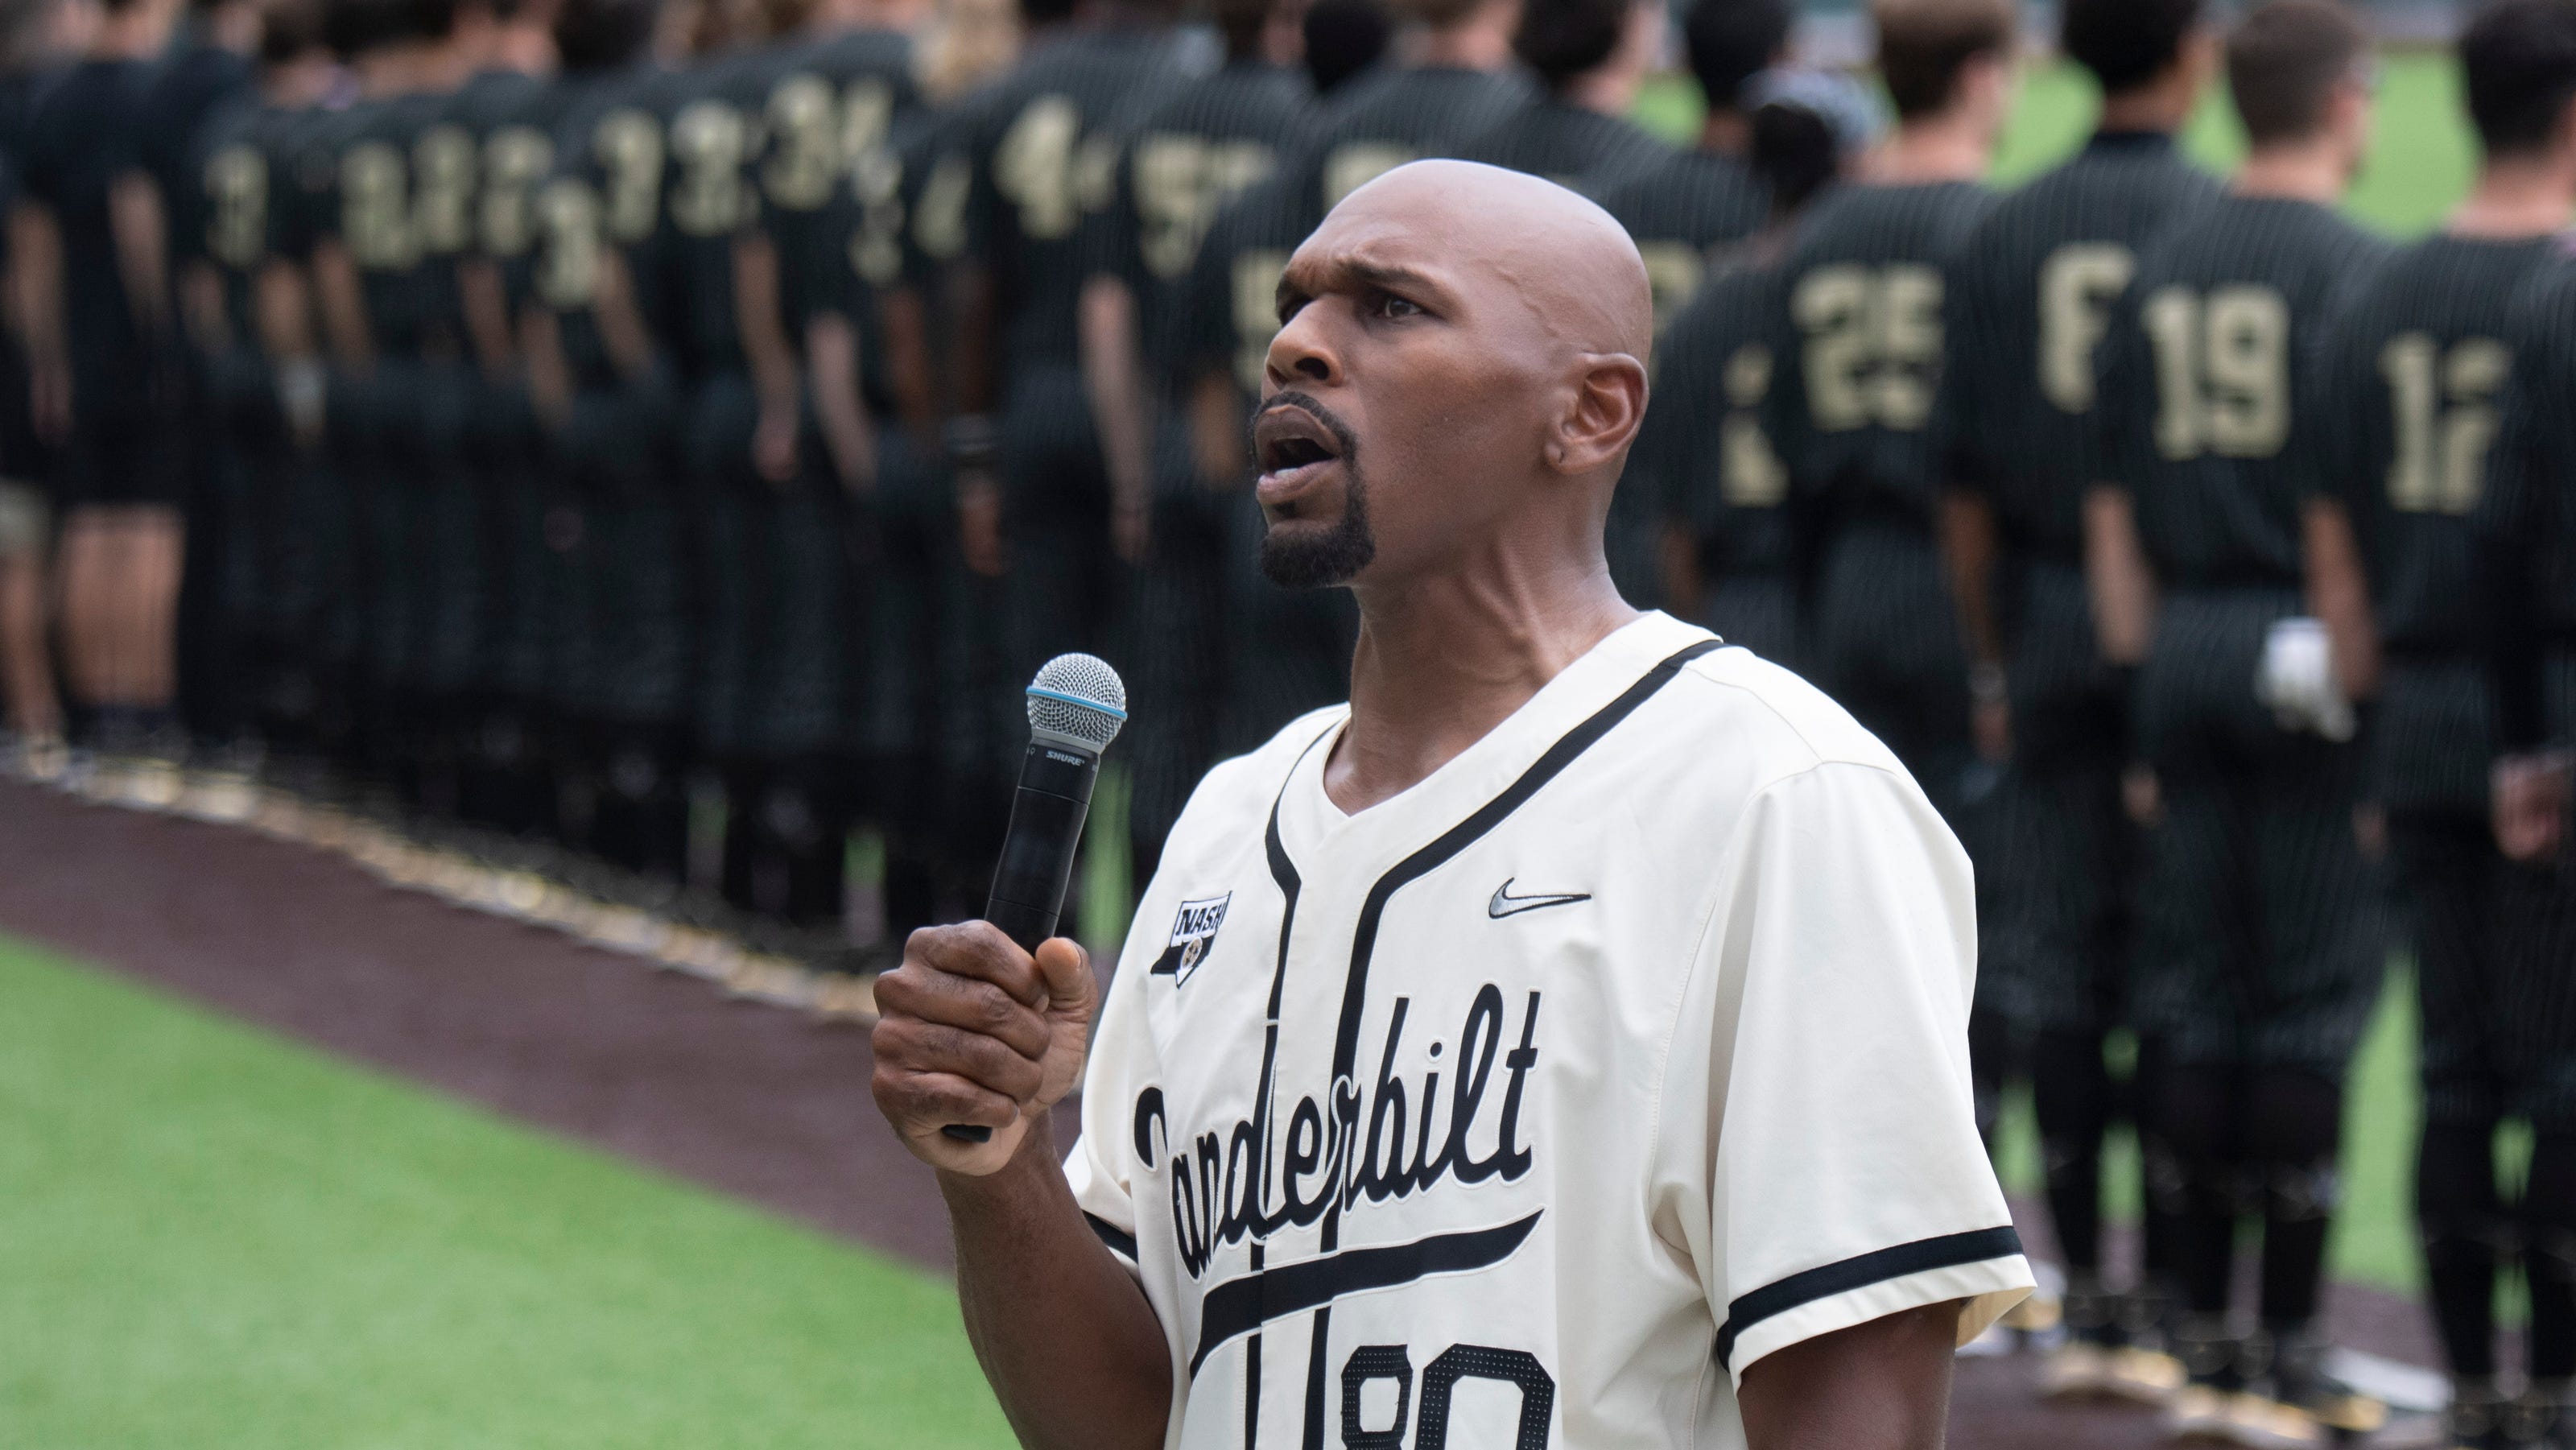 See Jerry Stackhouse sing national anthem at Vanderbilt vs. ECU baseball game